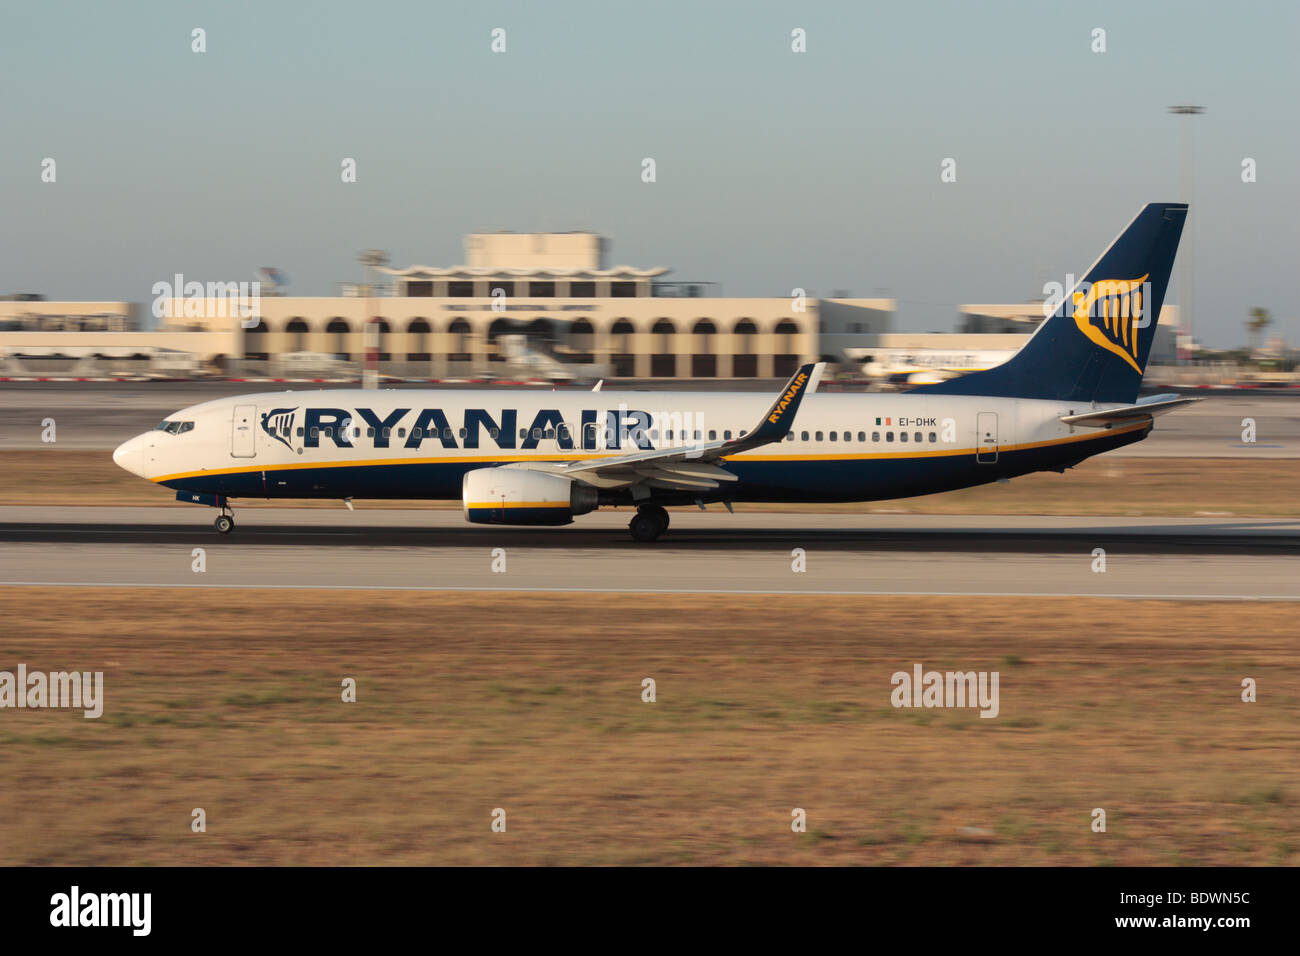 Ryanair Boeing 737-800 Düsenflugzeug in Fahrt während des Starts von Malta. Wirtschaft Flugreisen. Foto geschwenkt für Hintergrund motion blur Effekt. Stockfoto